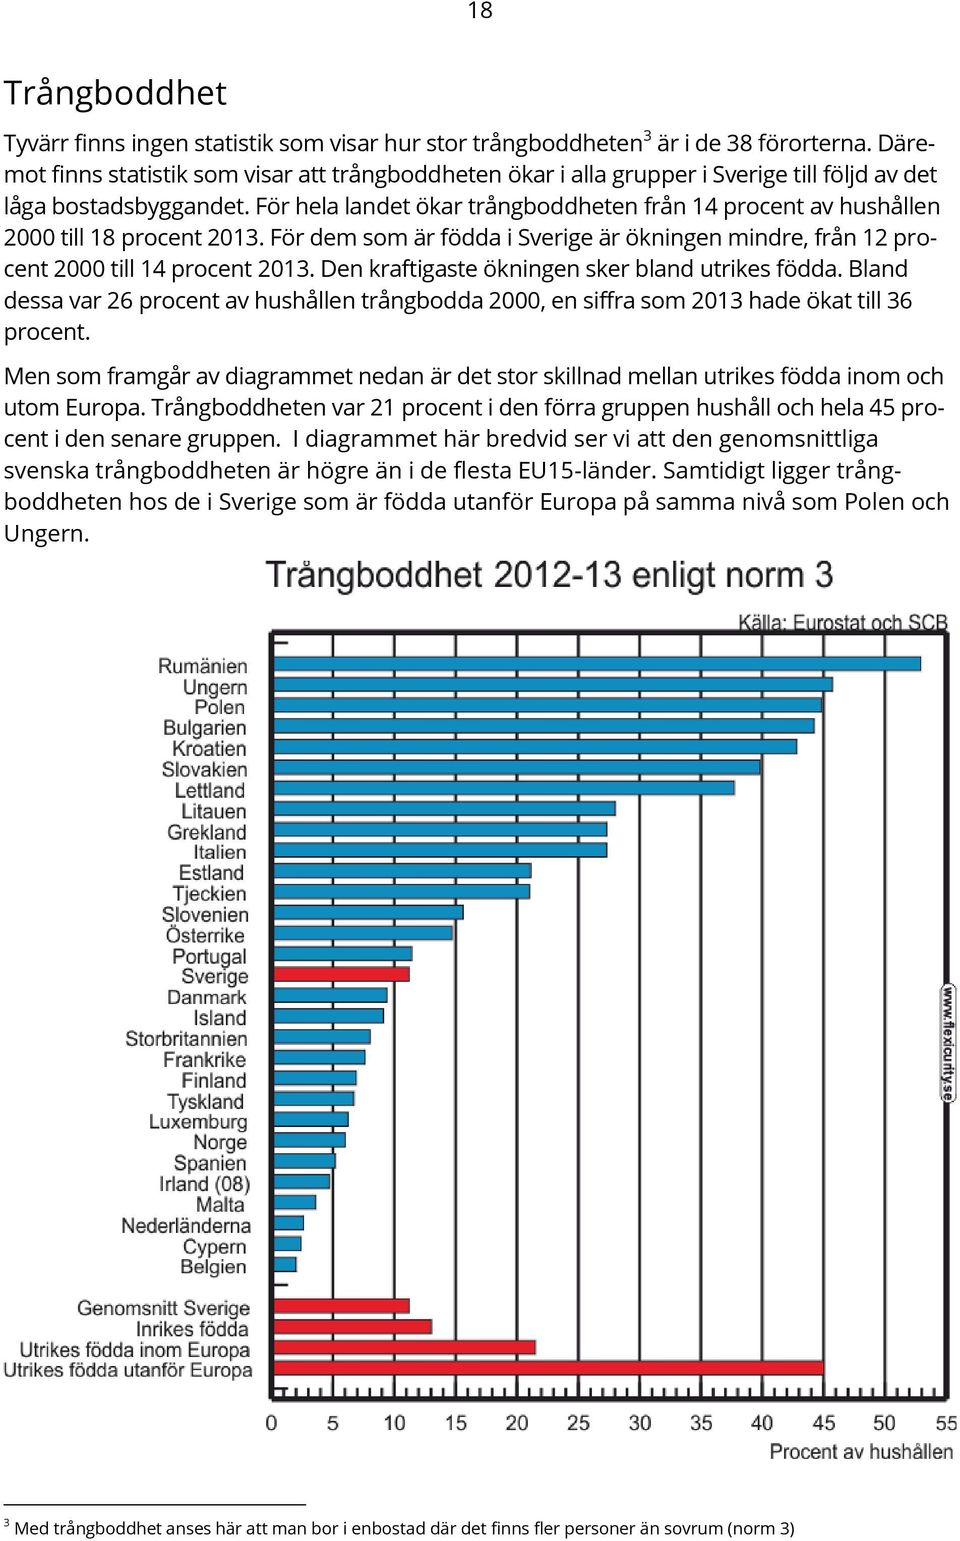 För hela landet ökar trångboddheten från 14 procent av hushållen 2000 till 18 procent 2013. För dem som är födda i Sverige är ökningen mindre, från 12 procent 2000 till 14 procent 2013.